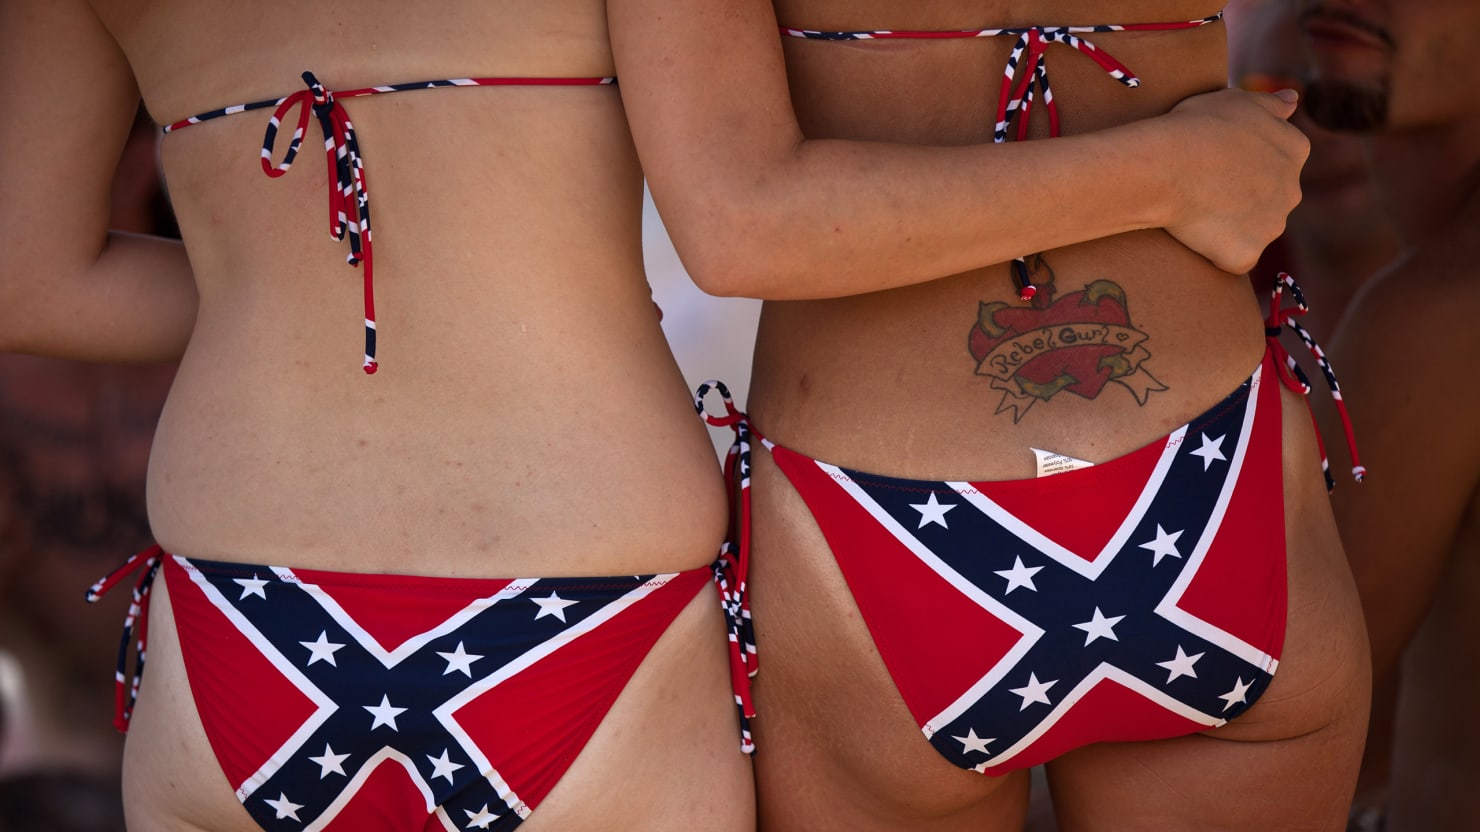 Confederate flag lingerie